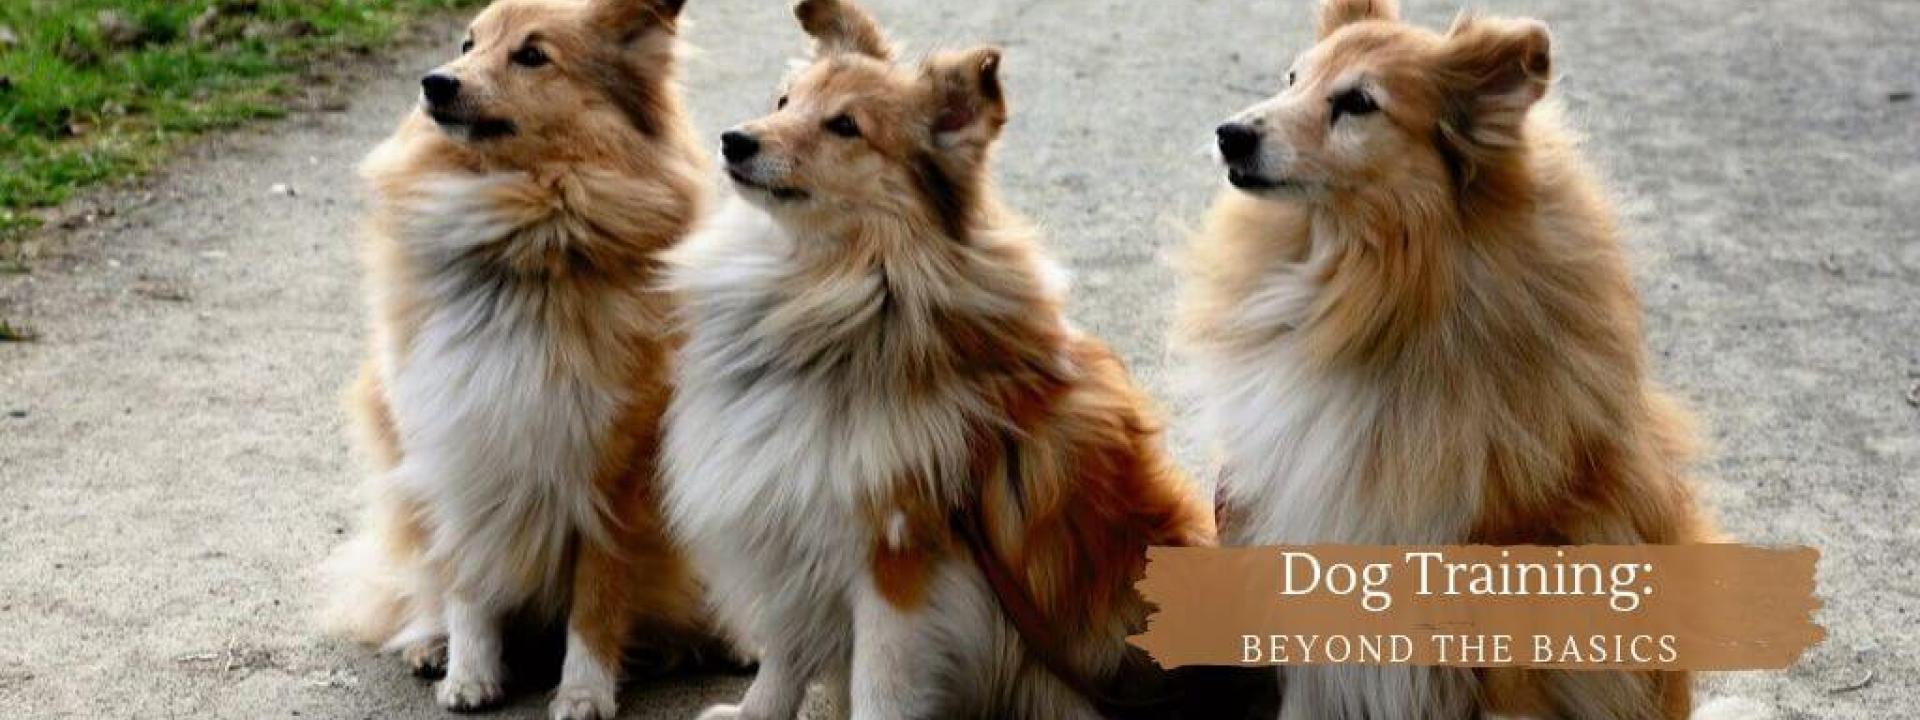 dog-training-beyond-basics-blog-header.jpg